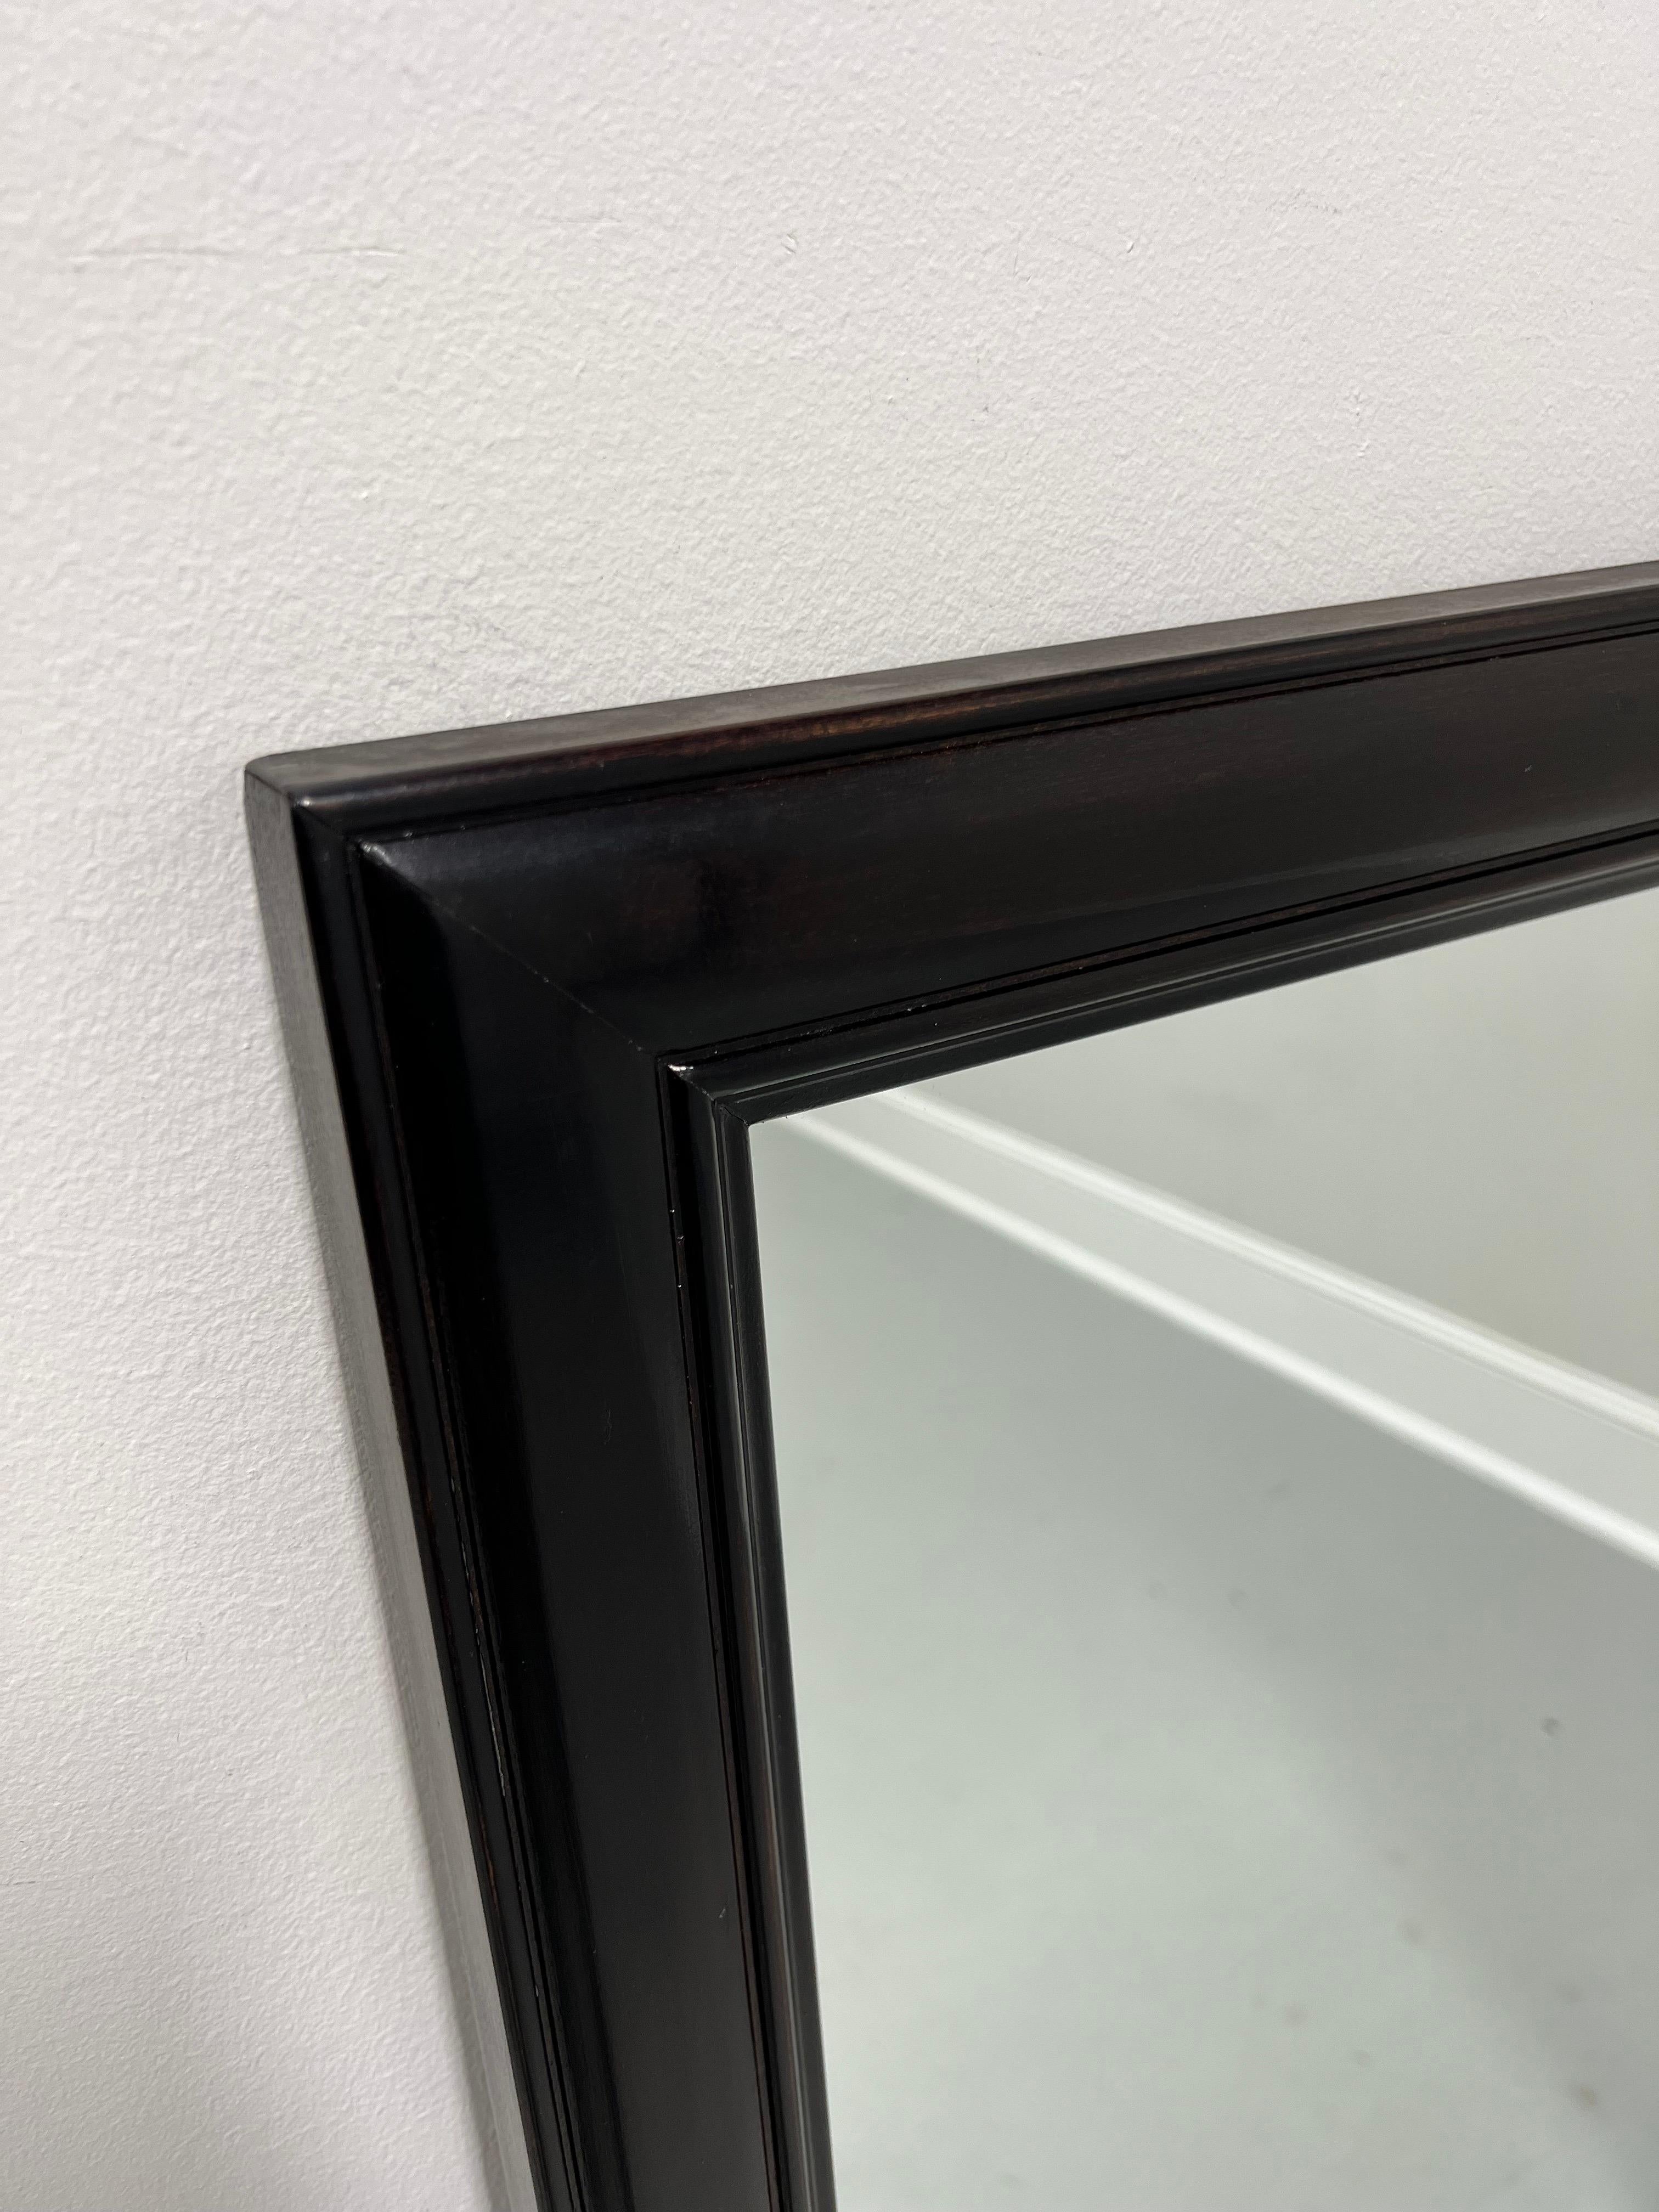 Eine asiatisch inspirierte Kommode oder ein Wandspiegel von Michael Taylor für Henredon. Verspiegeltes Glas in einem Rahmen aus dunklem Mahagoni, der ebonisiert wurde. Hergestellt in Morganton, North Carolina, USA, ca. 1982.

Stil #:  9930-04